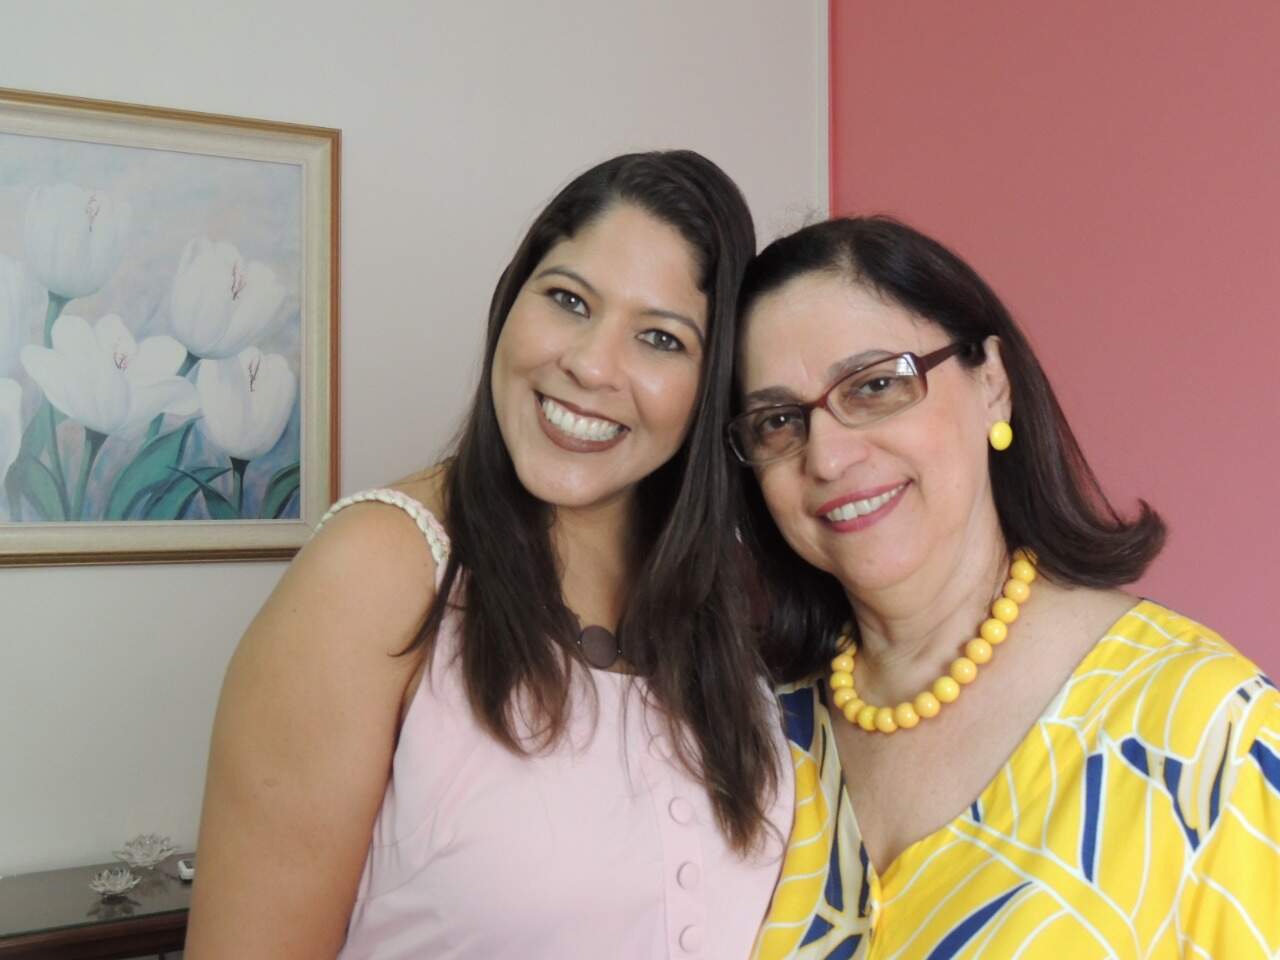 Com Silvana Bormio, a professora que sugeriu o livro responsável por despertar o interesse de Rafaela sobre a maternidade